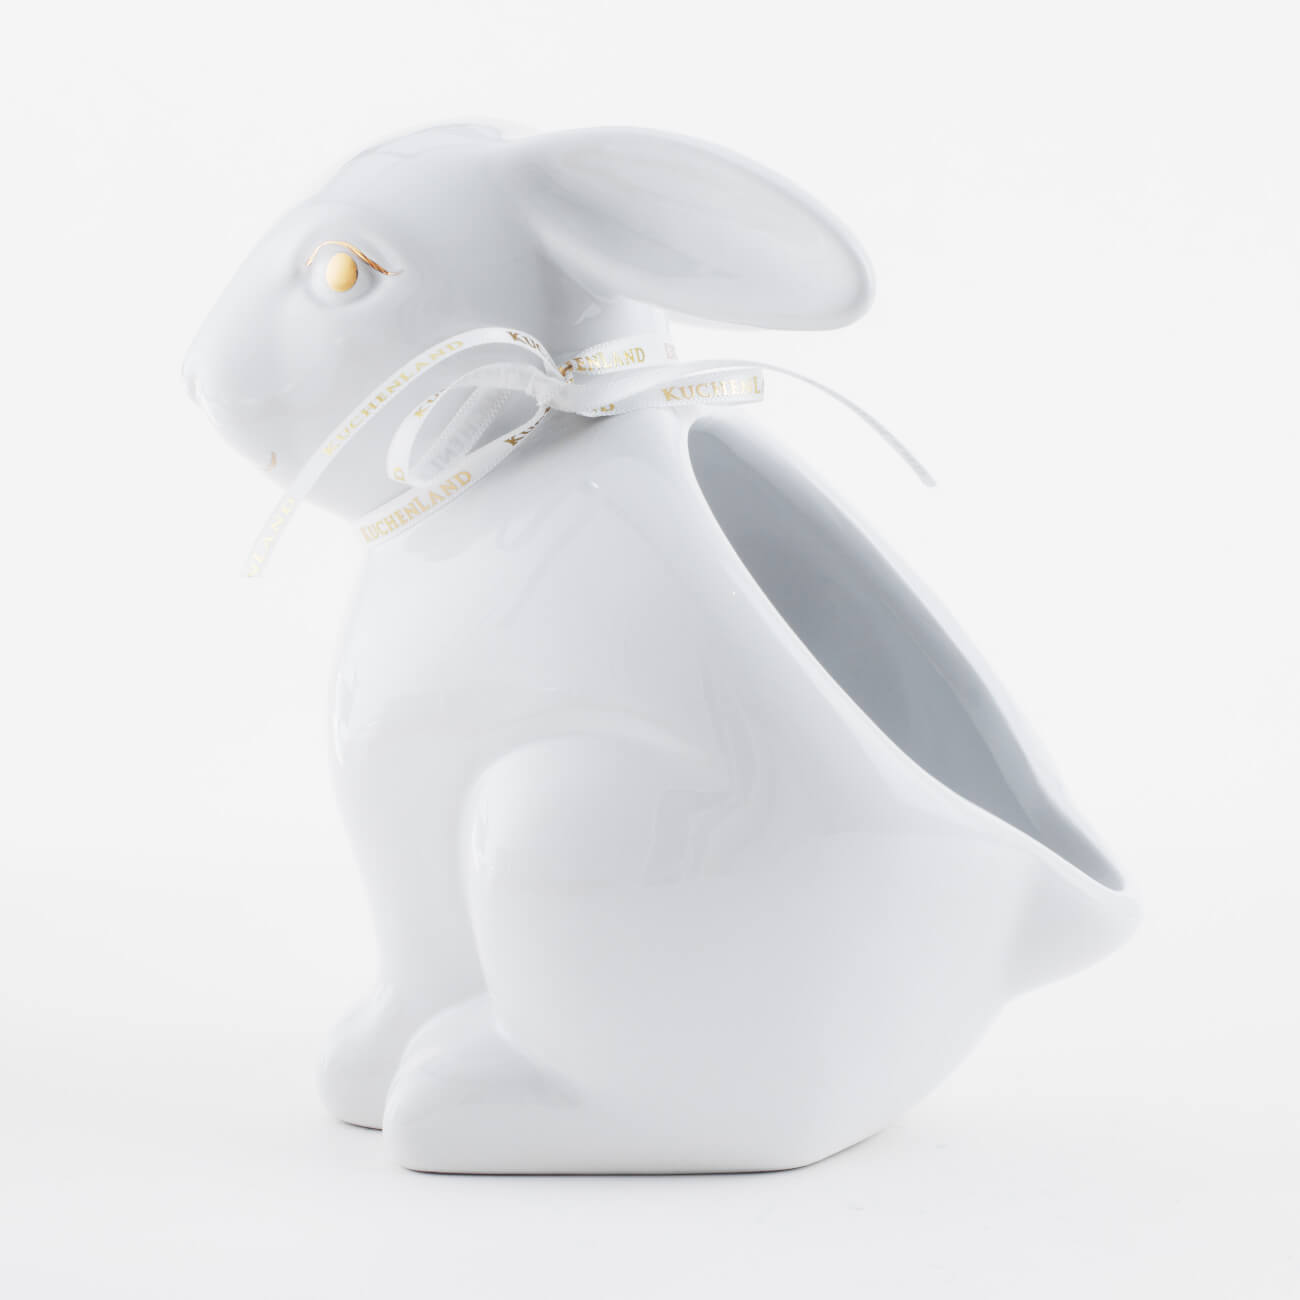 Конфетница, 17х17 см, керамика, белая, Кролик, Easter gold конфетница 18x14 см с ручкой керамика молочная кролики в корзине natural easter